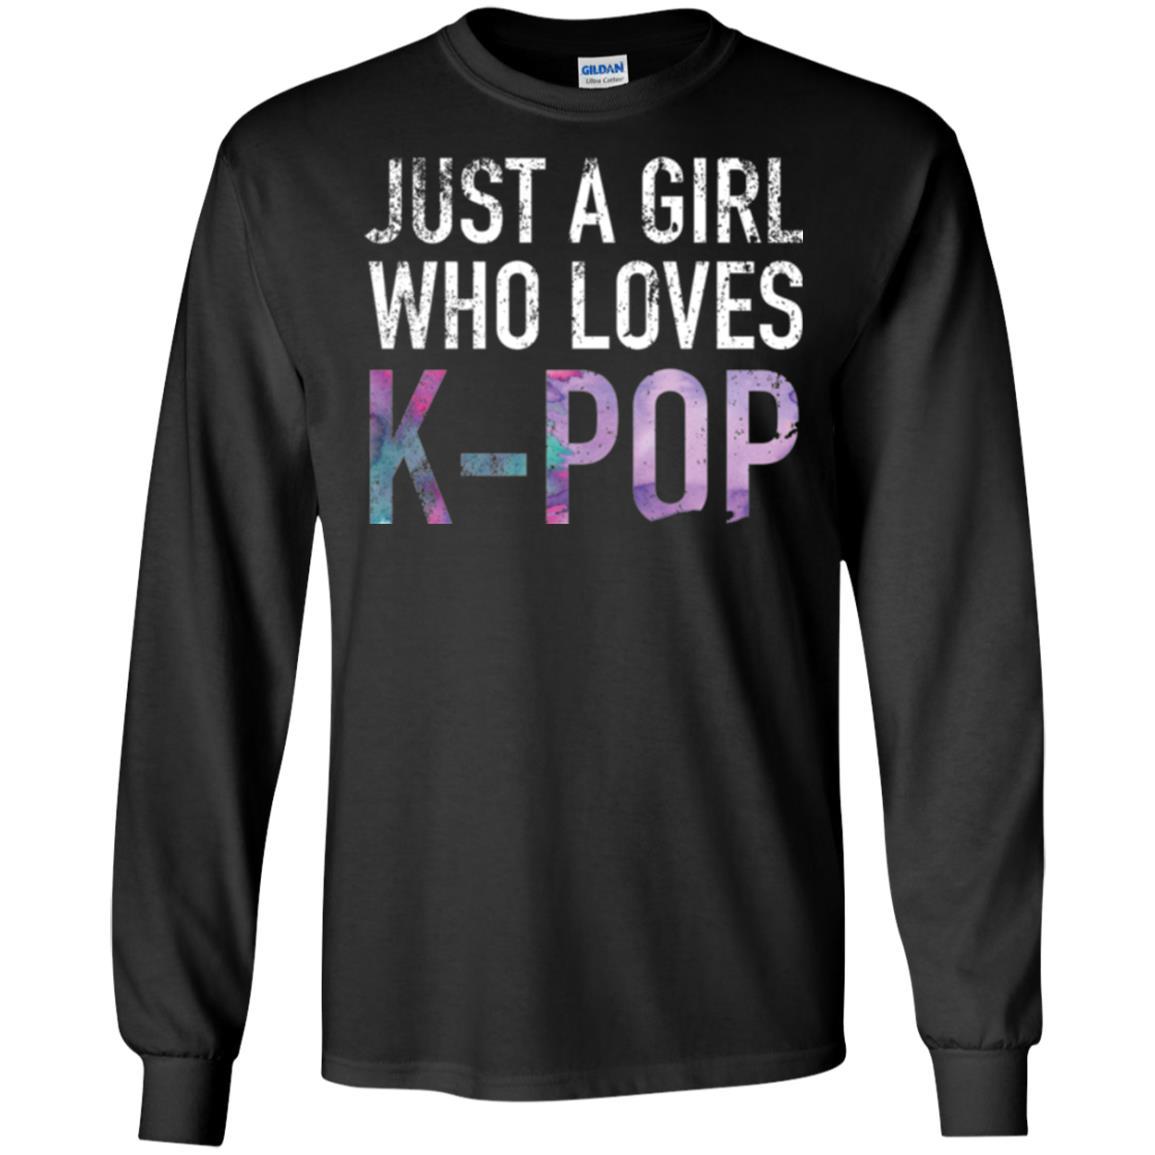 K-pop Fan T-shirt Just A Girl Who Loves K-pop